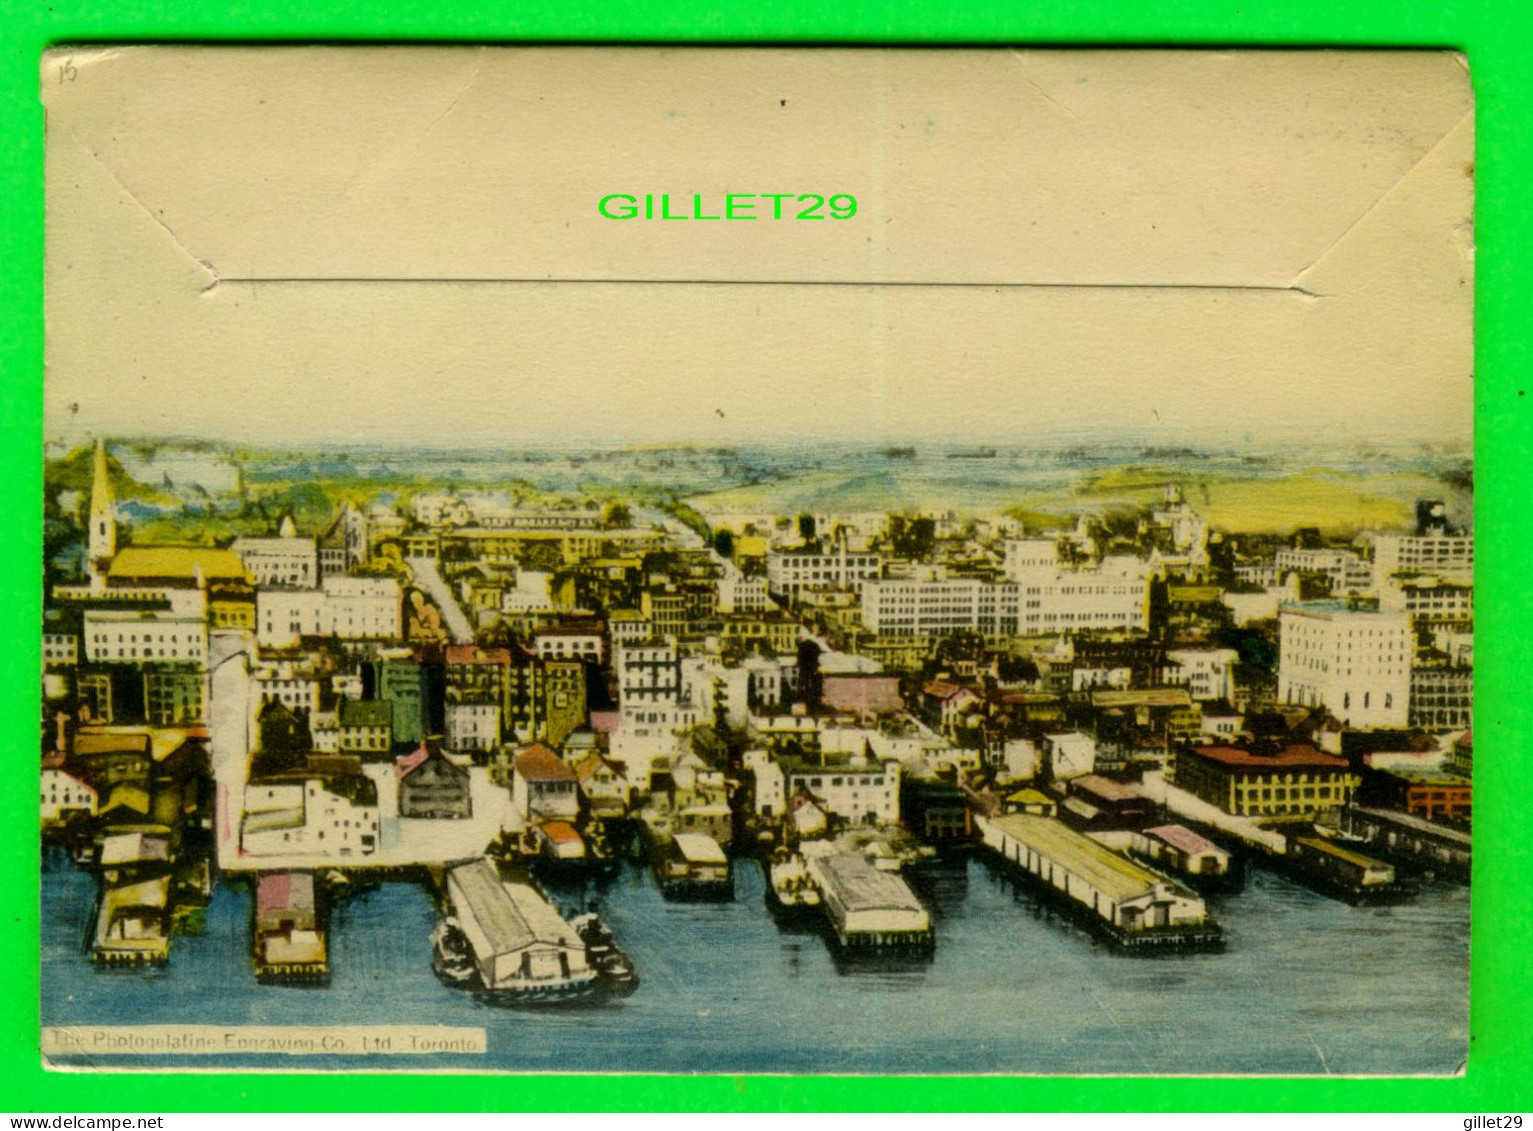 HALIFAX, NOVA SCOTIA - LIVRET SOUVENIR BICENTENARY 1749-1949 - - Halifax